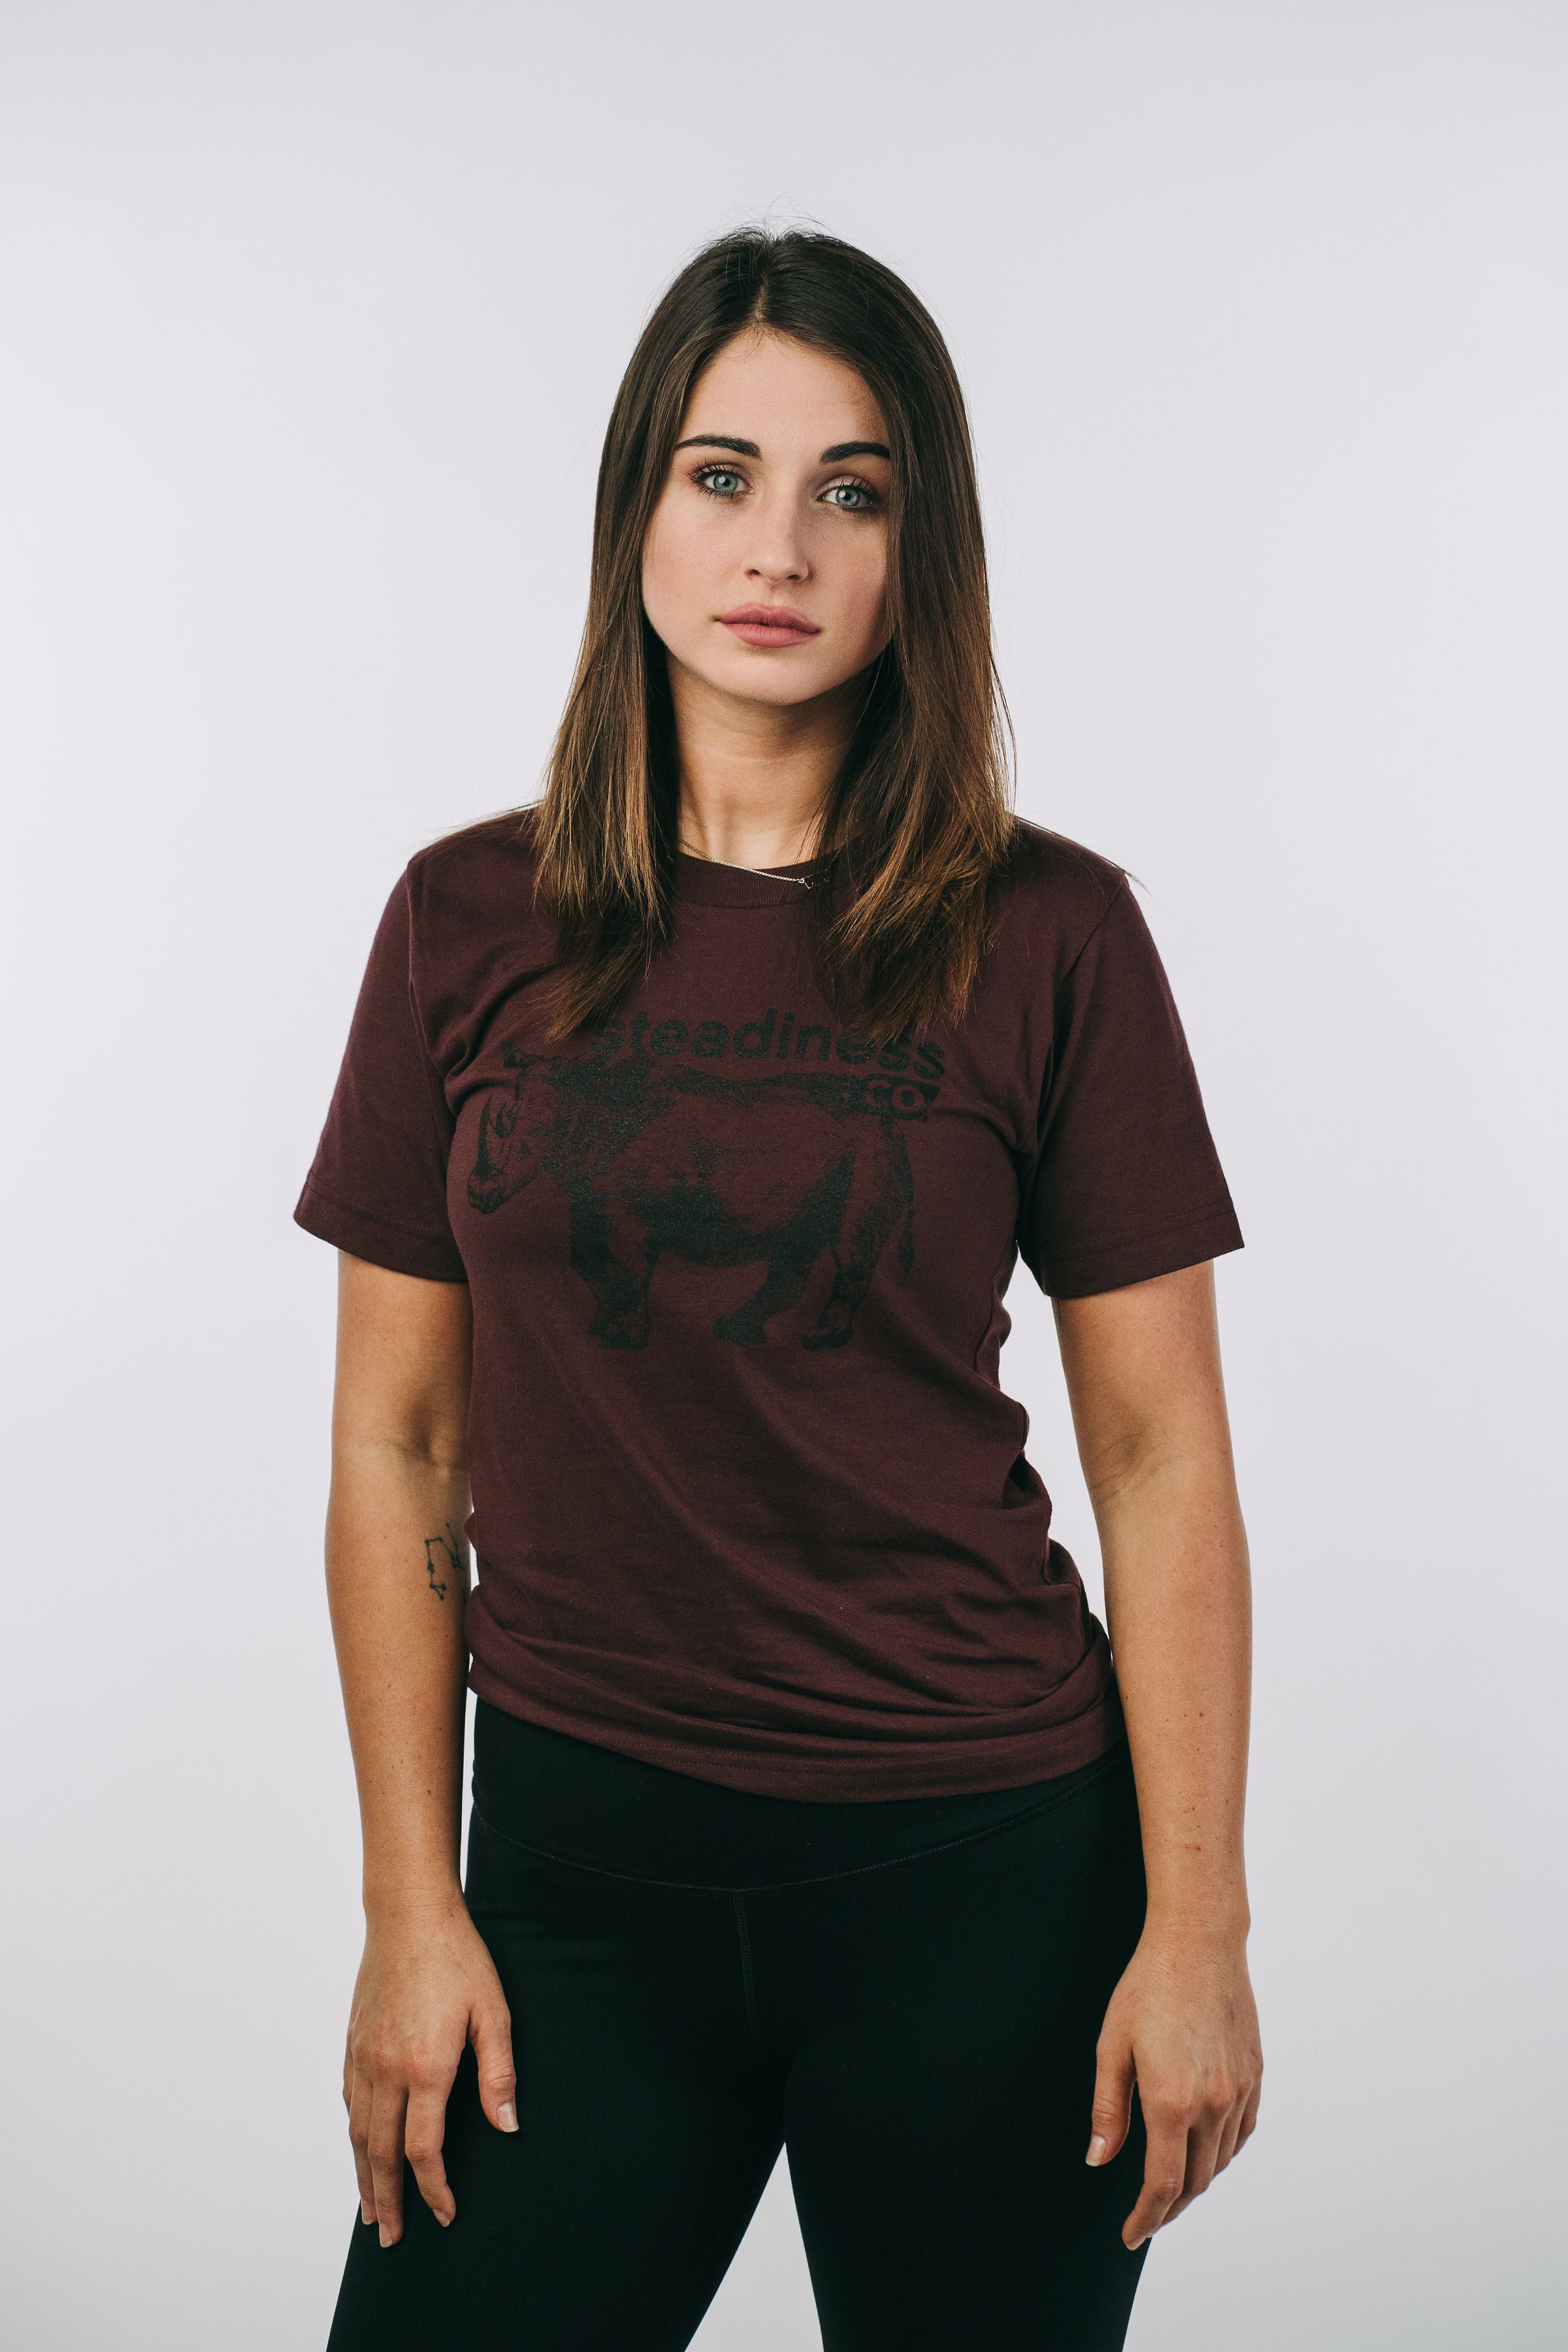 Woman Wearing RECO Brand Shirt